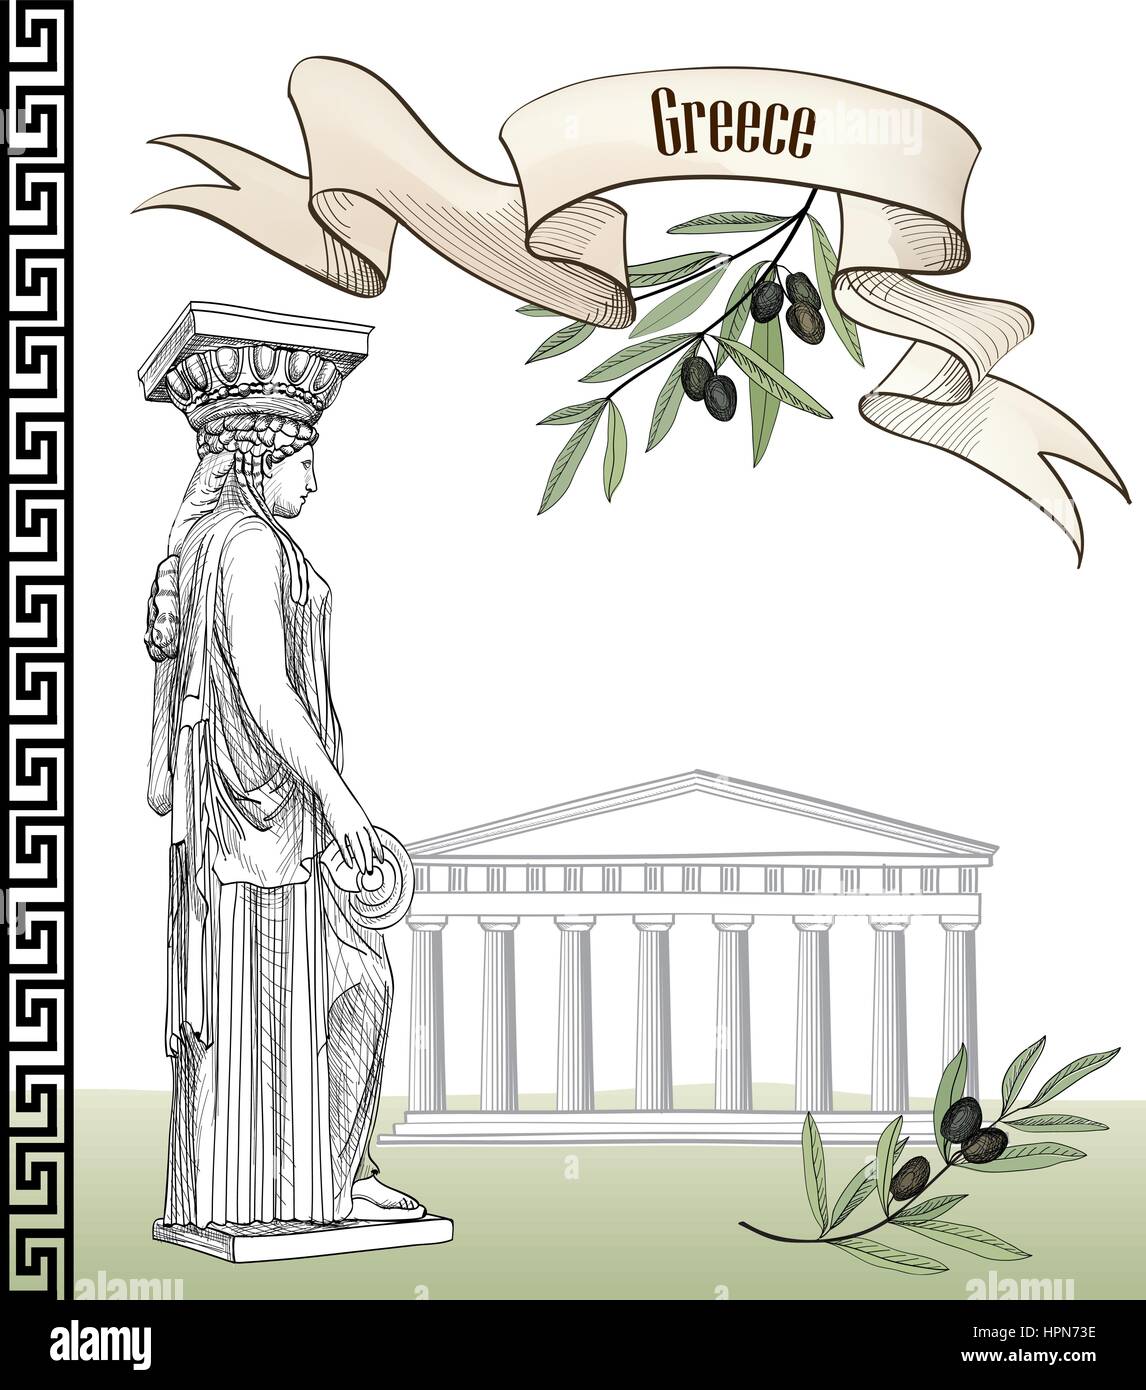 Das antike Griechenland Icon Set: Akropolis in Athen, griechische Skulptur caryatid, Olive Branch, griechische Ornament und Band mit kopieren. Hand gezeichnet Trave Stock Vektor